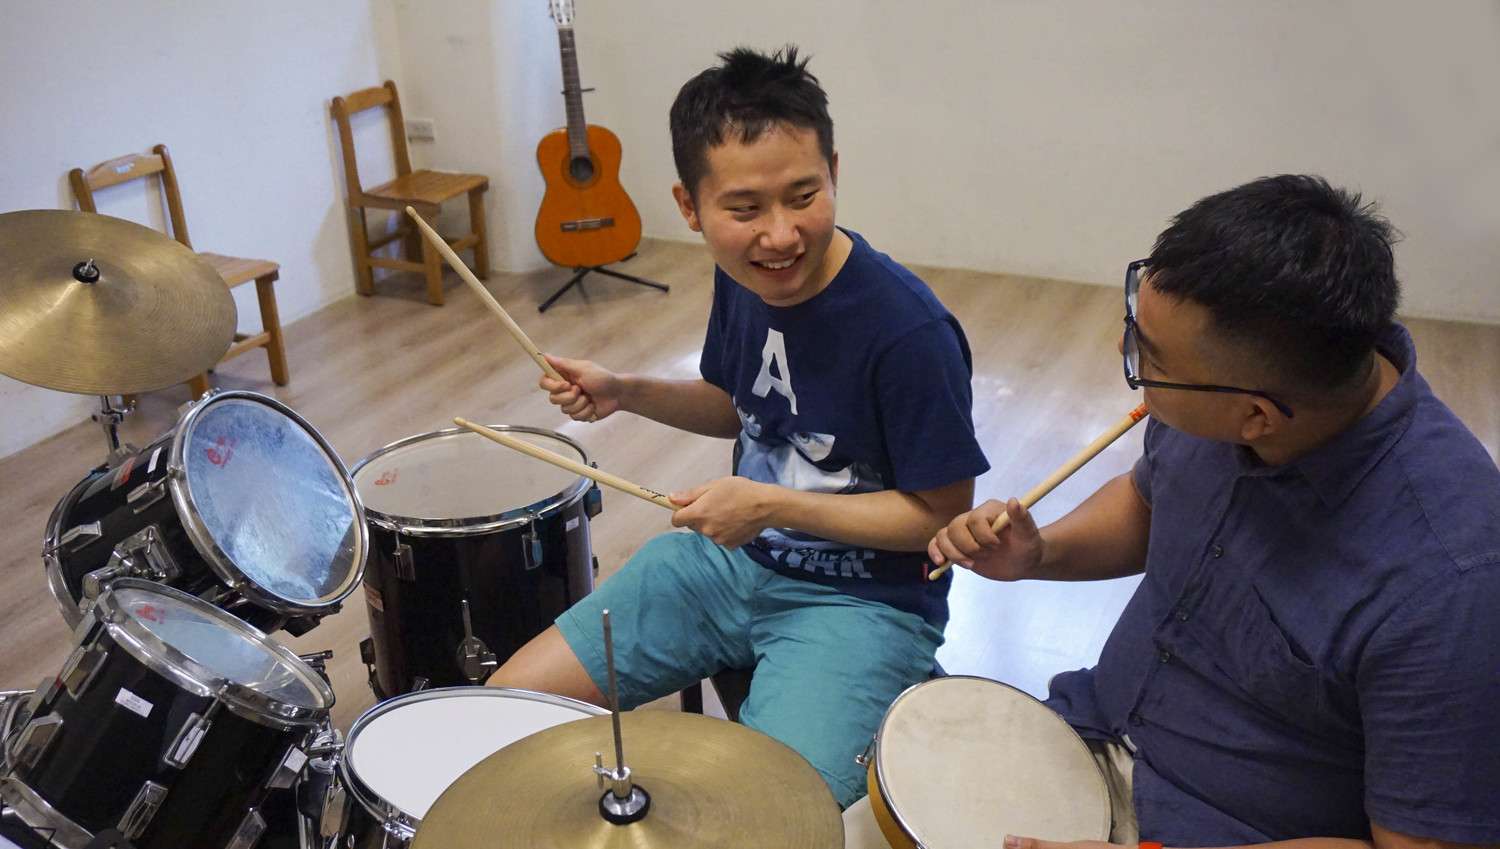 逢甲大學管樂團成員教導瑪利亞青年學習爵士鼓。